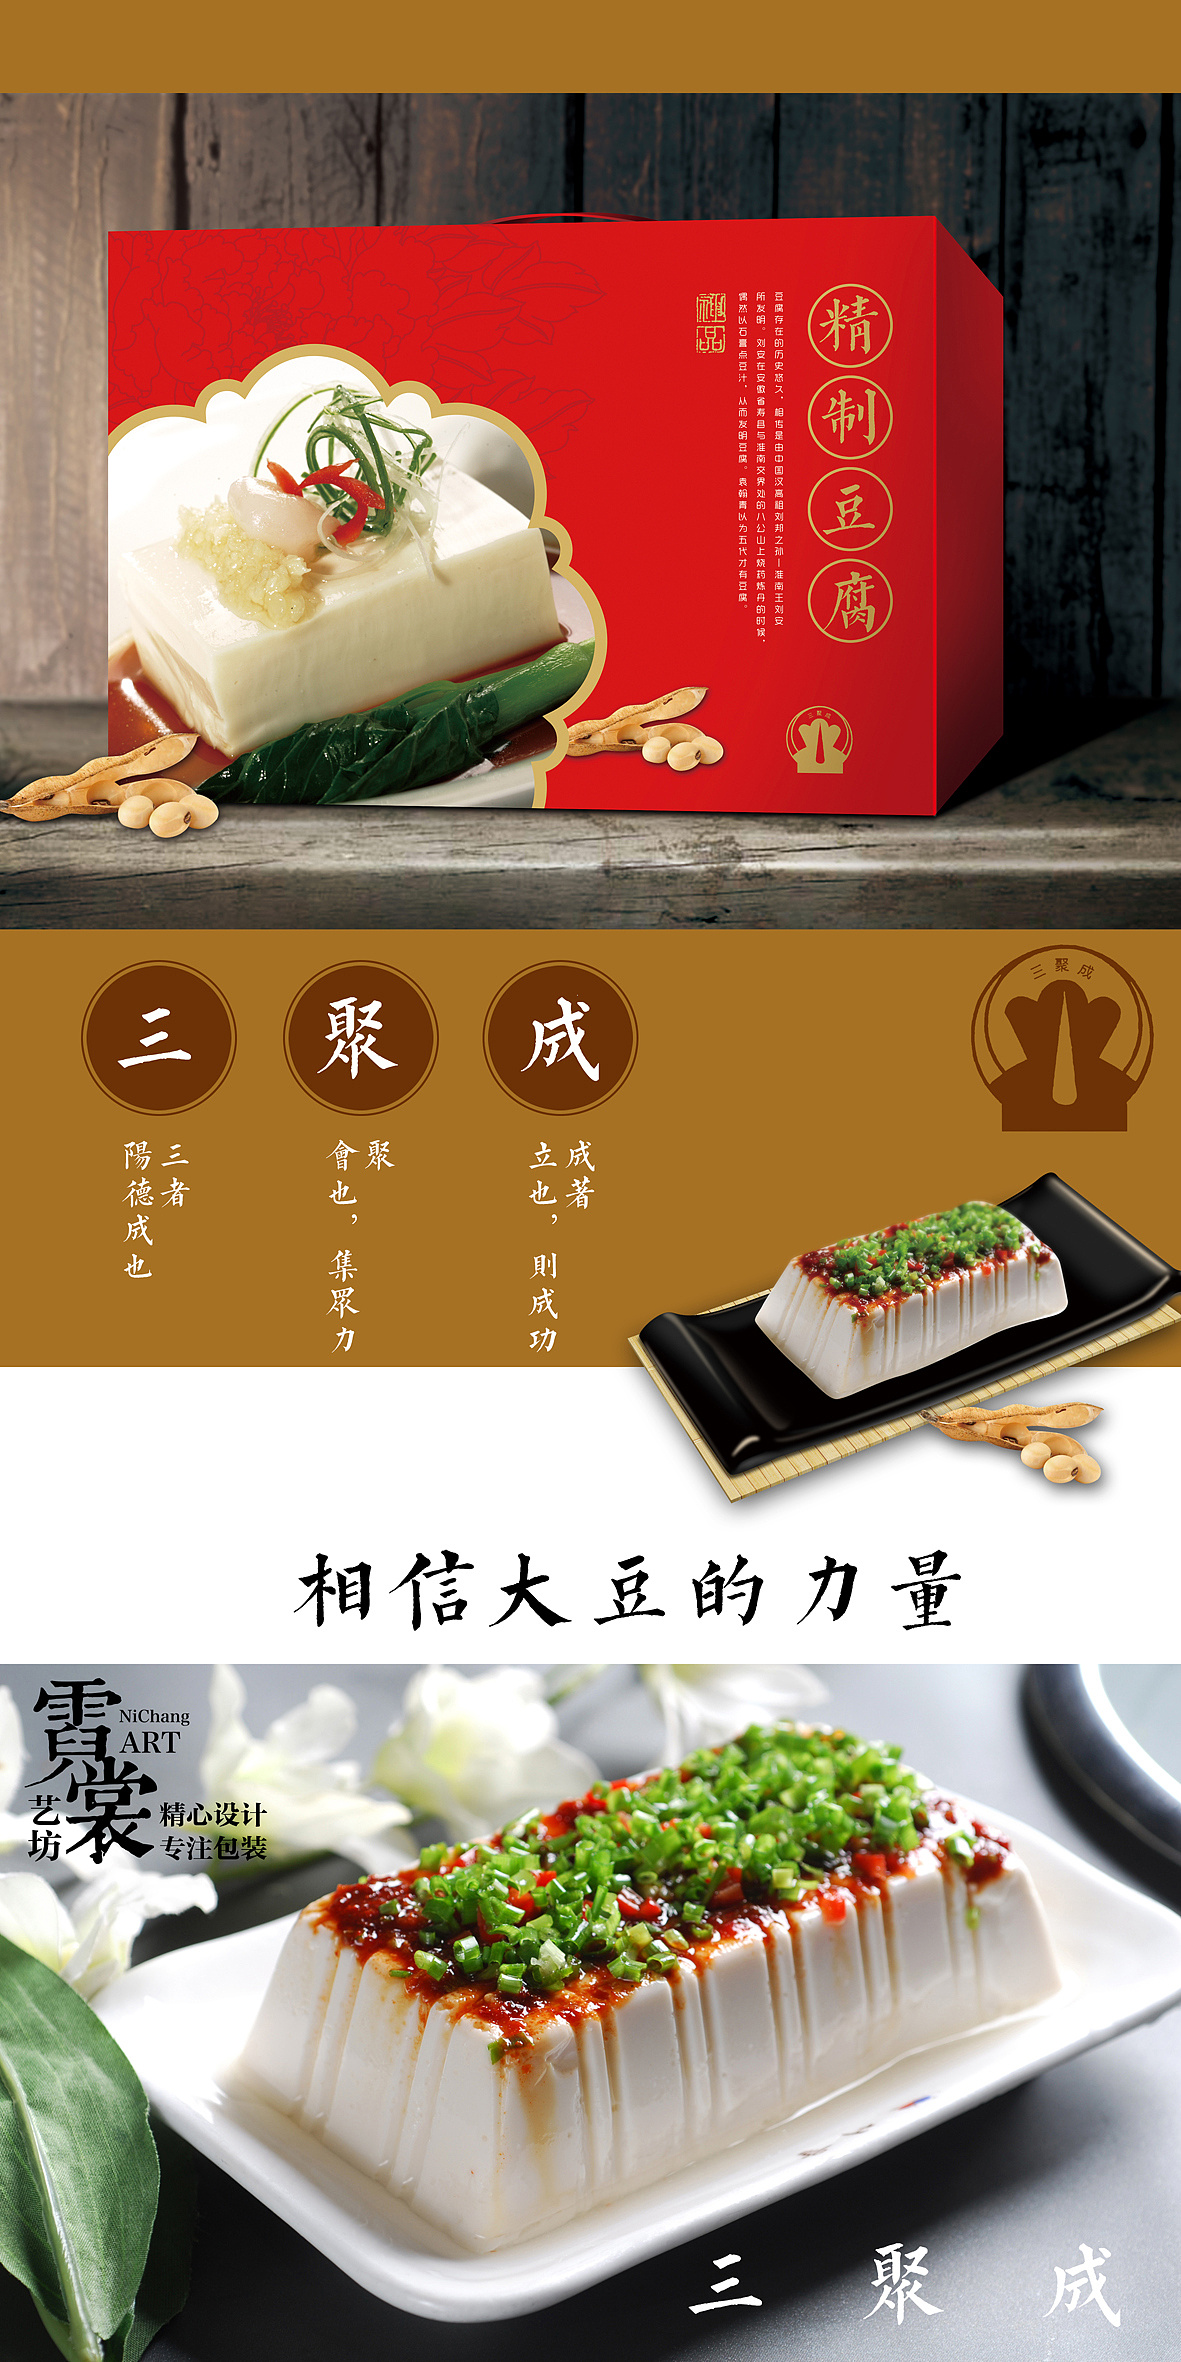 豆腐的神仙吃法-豆腐箱子,豆腐的神仙吃法-豆腐箱子的家常做法 - 美食杰豆腐的神仙吃法-豆腐箱子做法大全